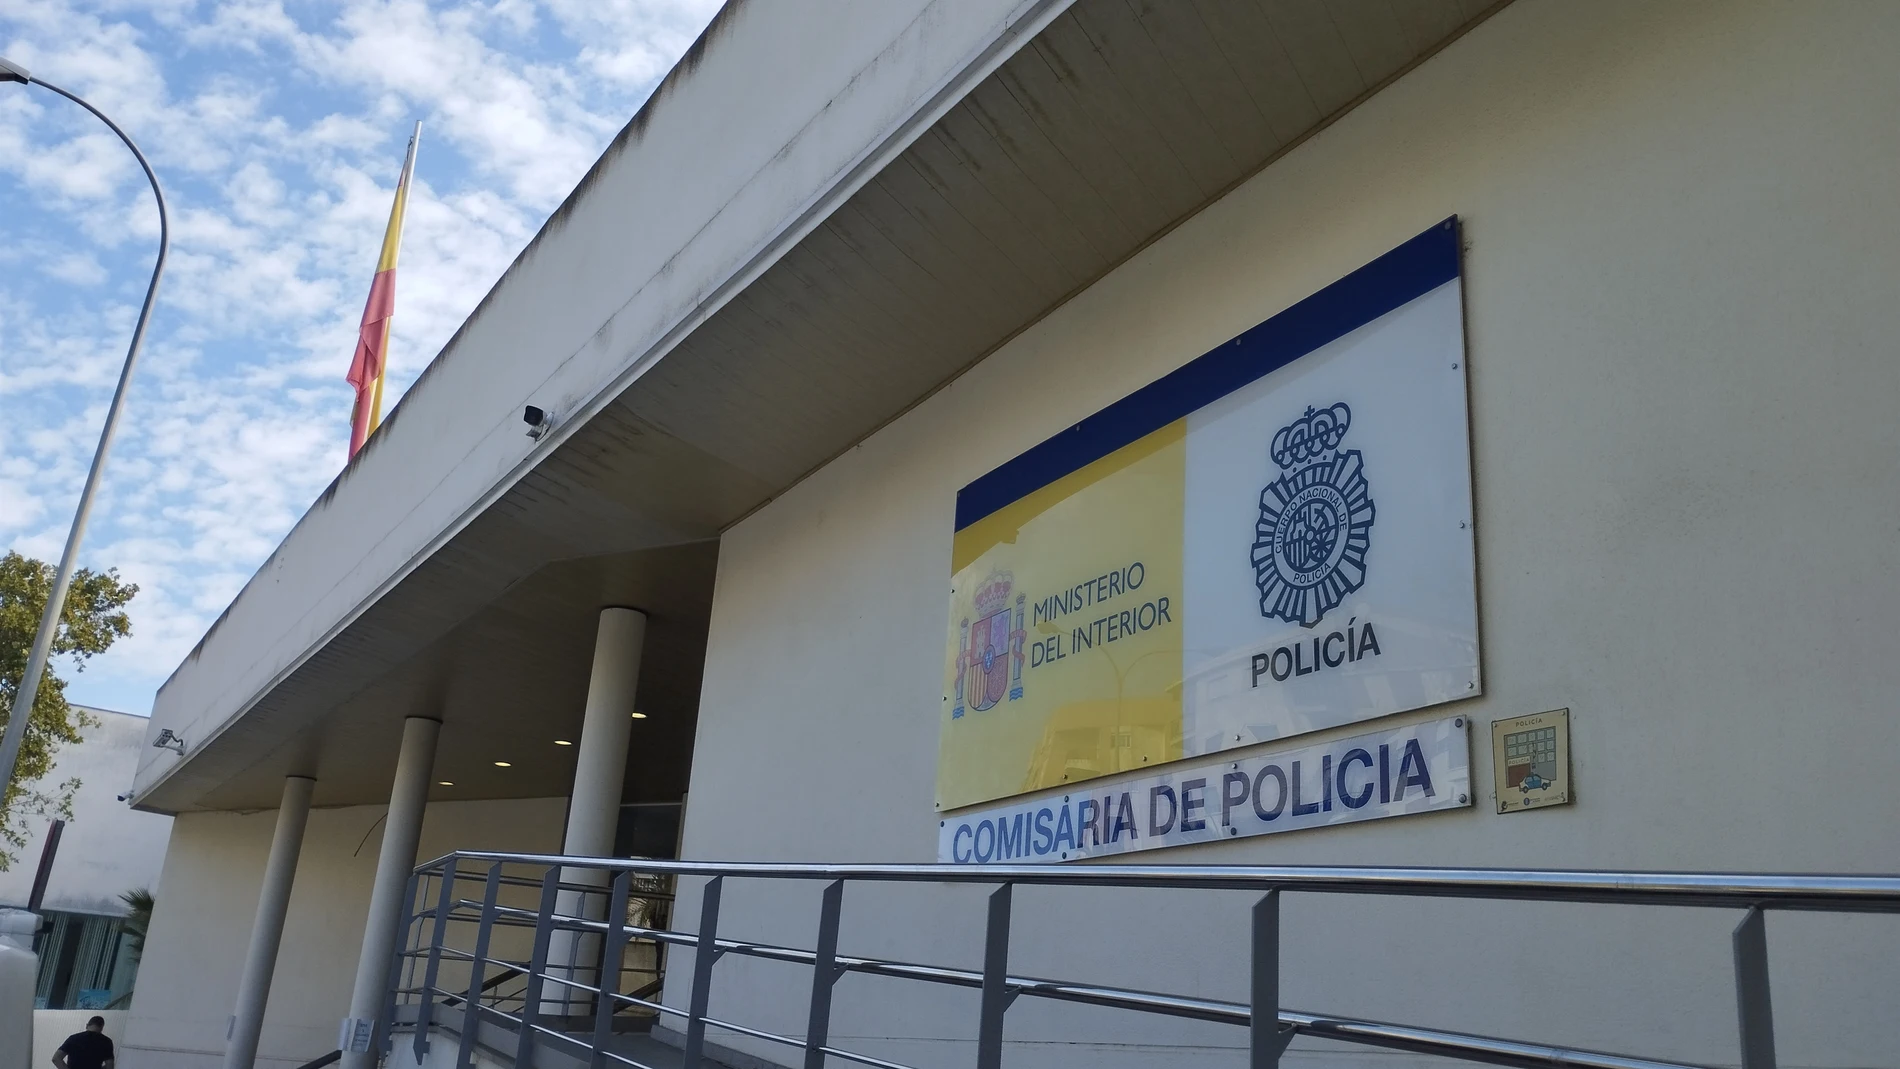 Comisaría de la Policía Nacional en Huelva